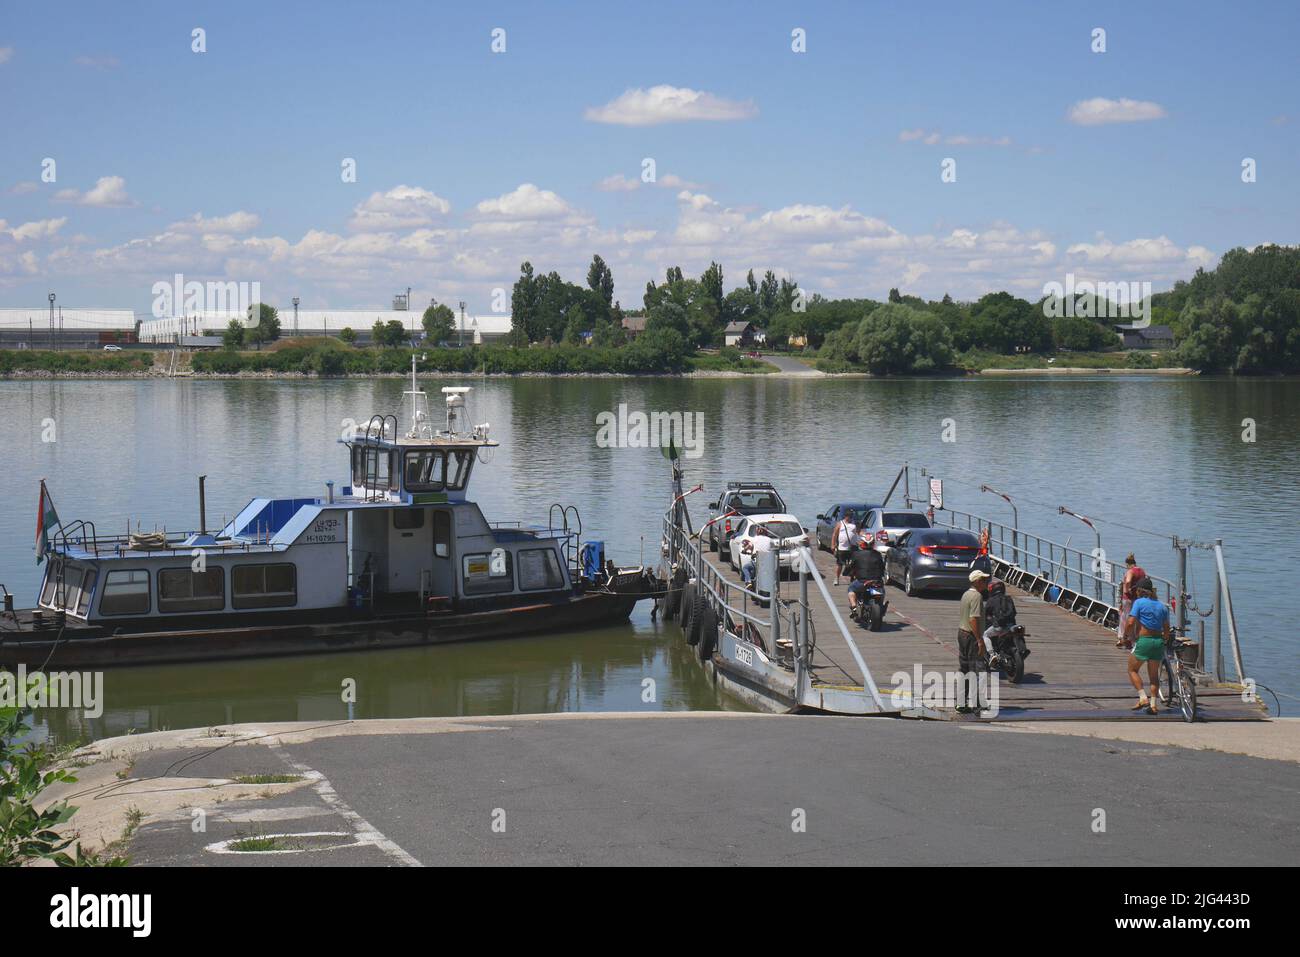 El ferry de Lorev a Adony a través del río Danubio, Lorev, isla de Csepel, Hungría Foto de stock